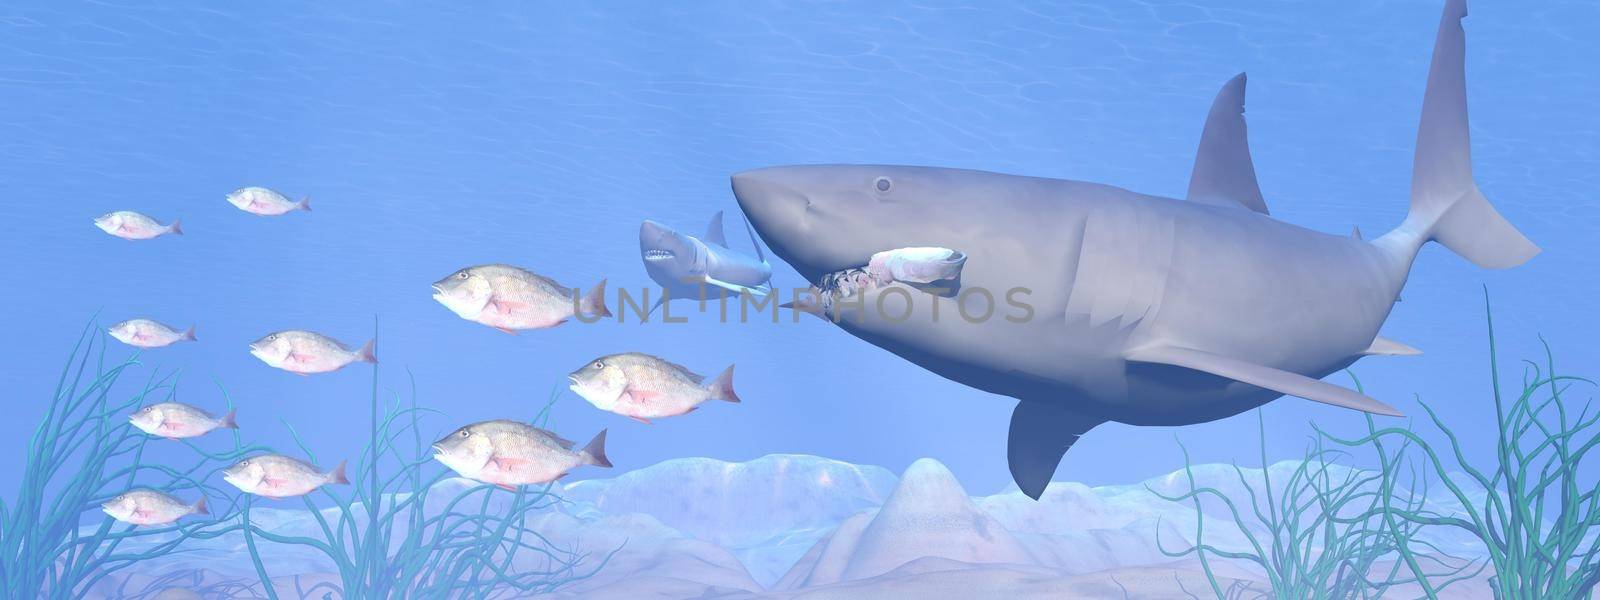 Shark eating - 3D render by Elenaphotos21